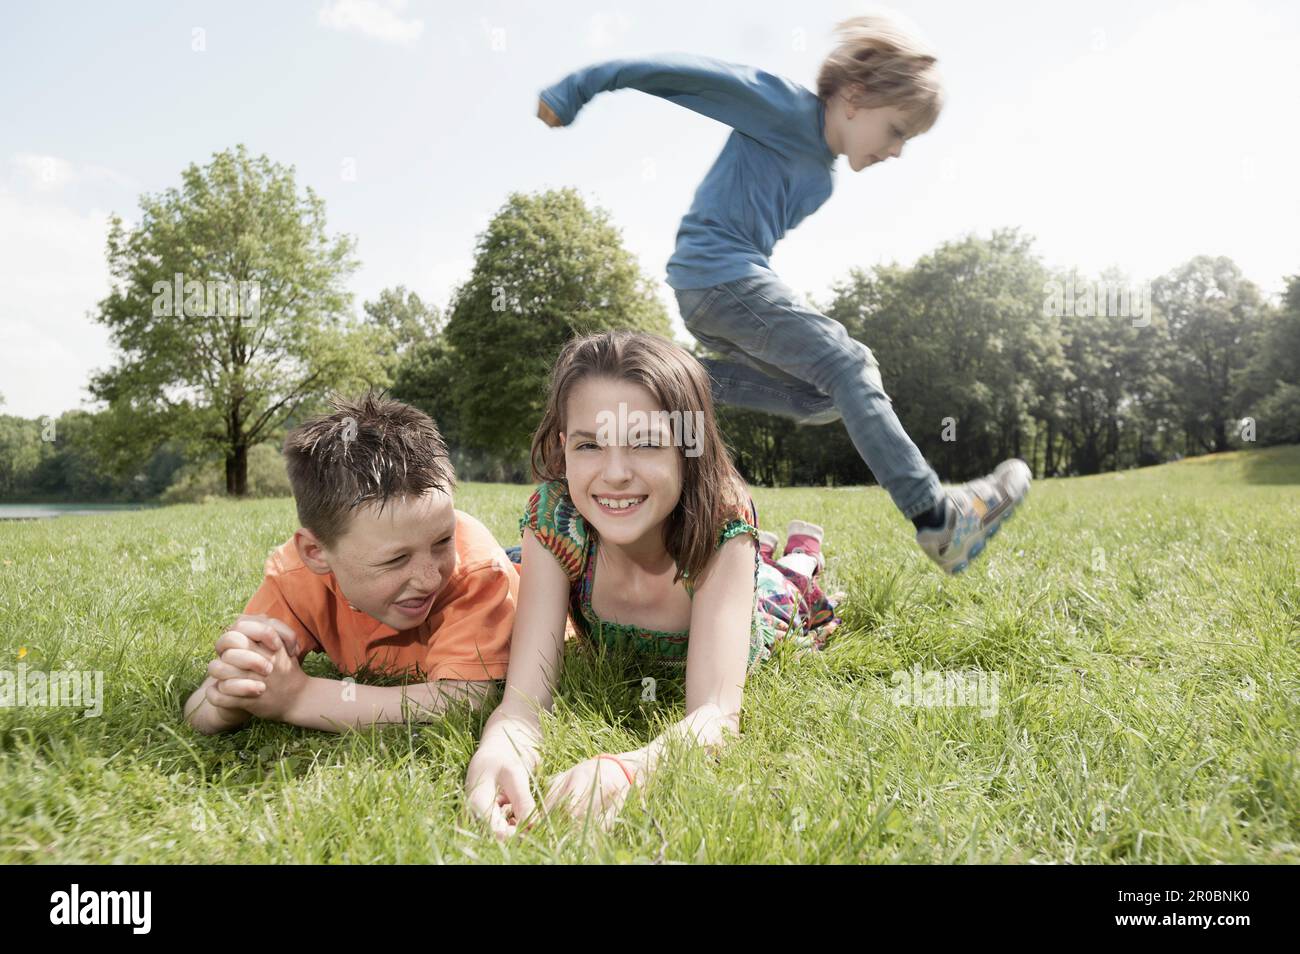 Niño saltando sobre sus amigos tumbados en la hierba en un parque, Munich, Baviera, Alemania Foto de stock